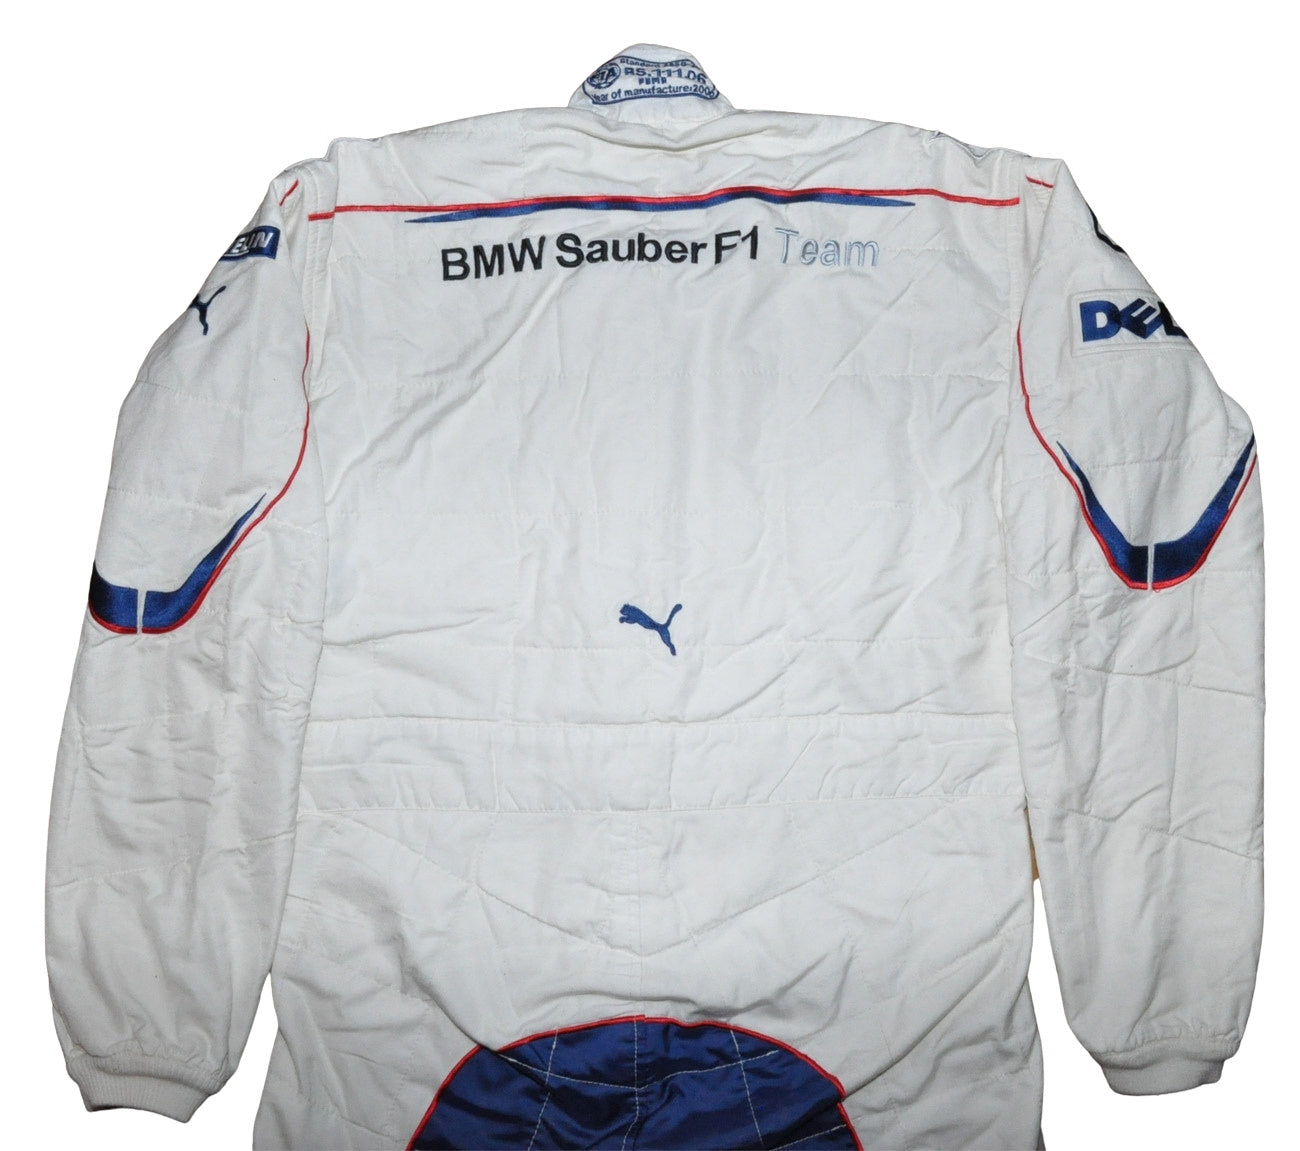 JACQUES VILLENEUVE USED & SIGNED BMW SAUBER 2006 Bahrain GP F1 Race SUIT